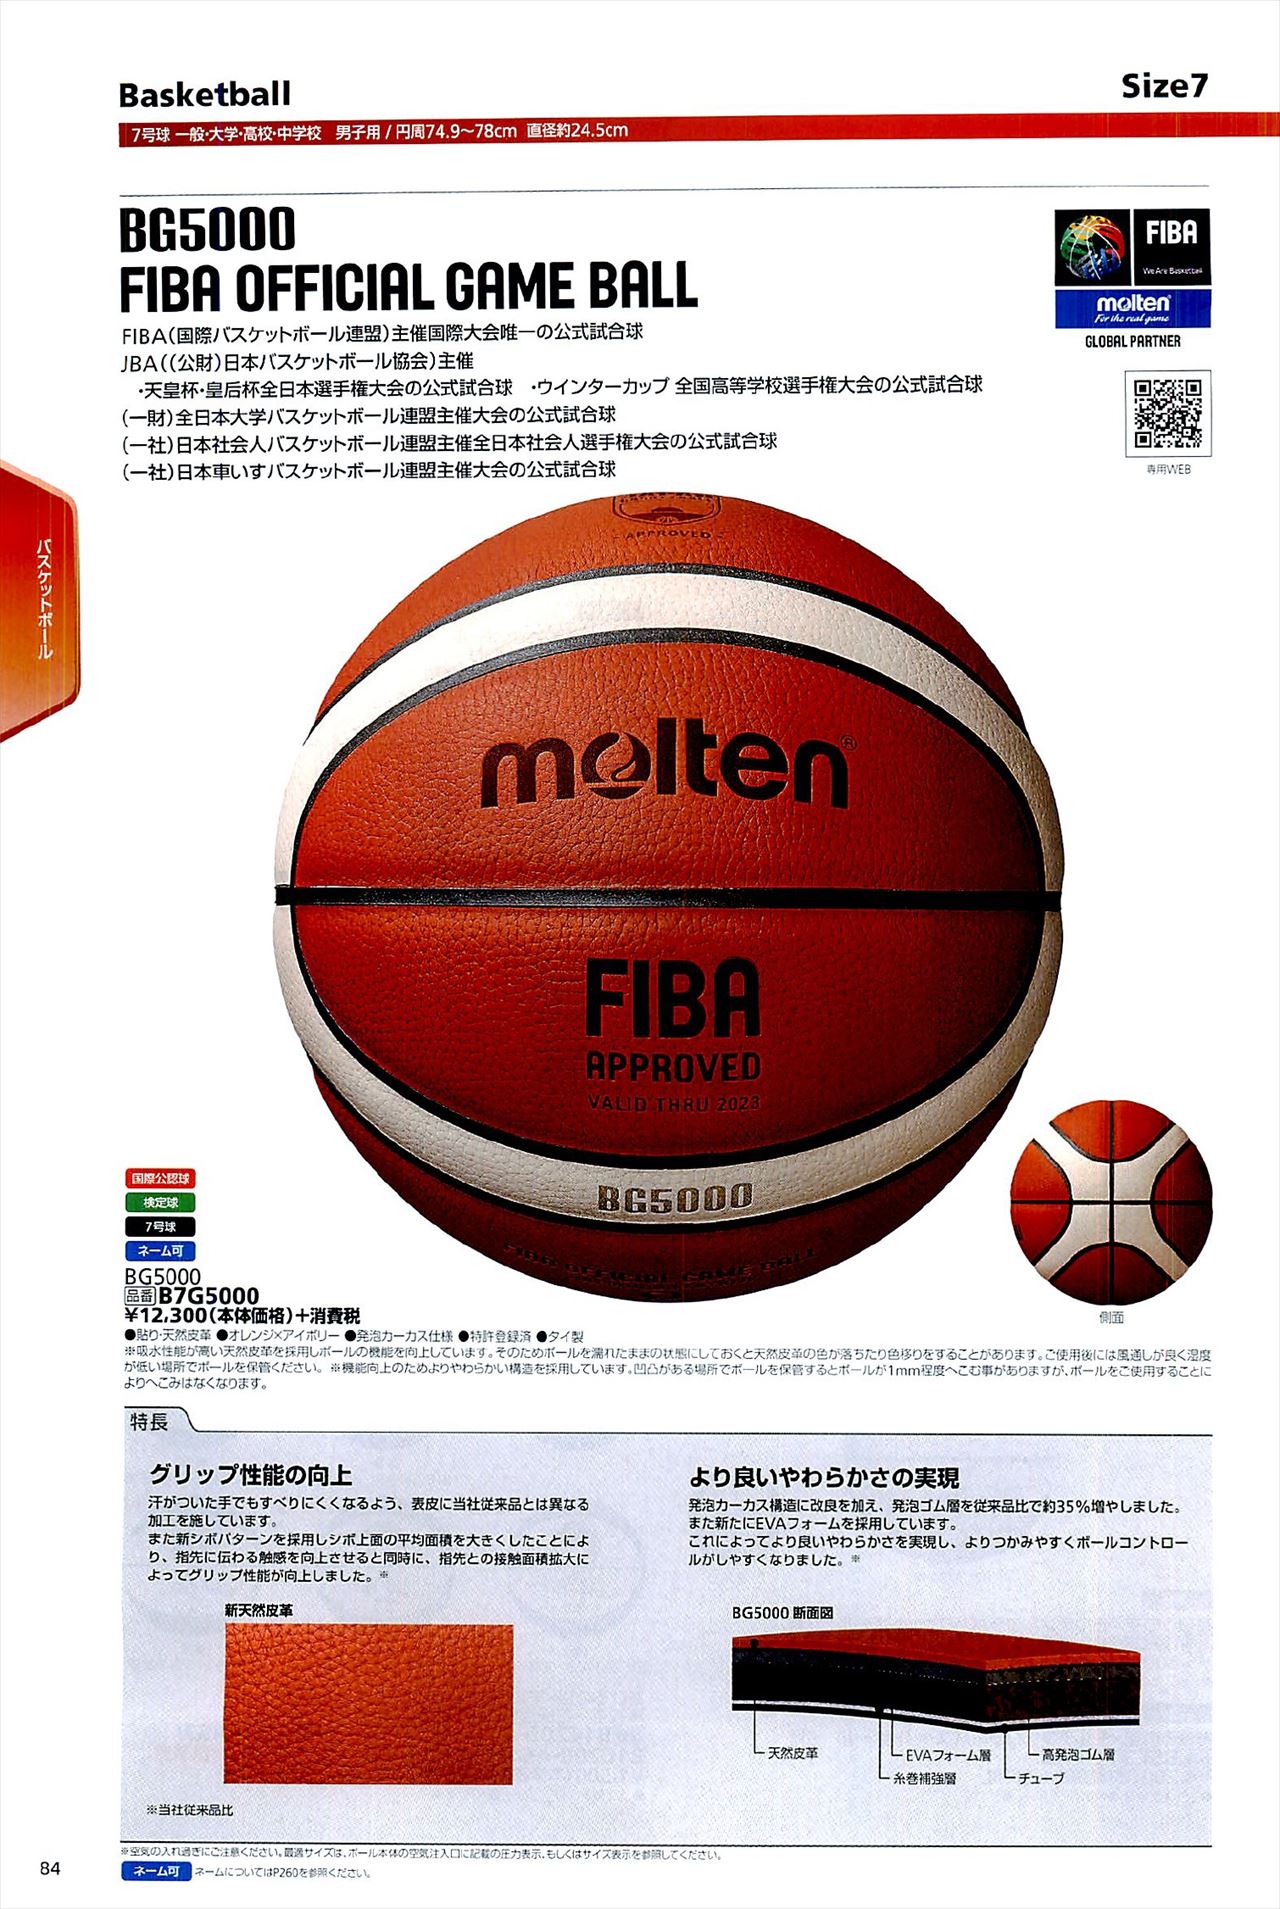 バスケットボール7号球は モルテンカタログ の ページ84 に掲載されています スポーツメーカーカタログ 目次ページ